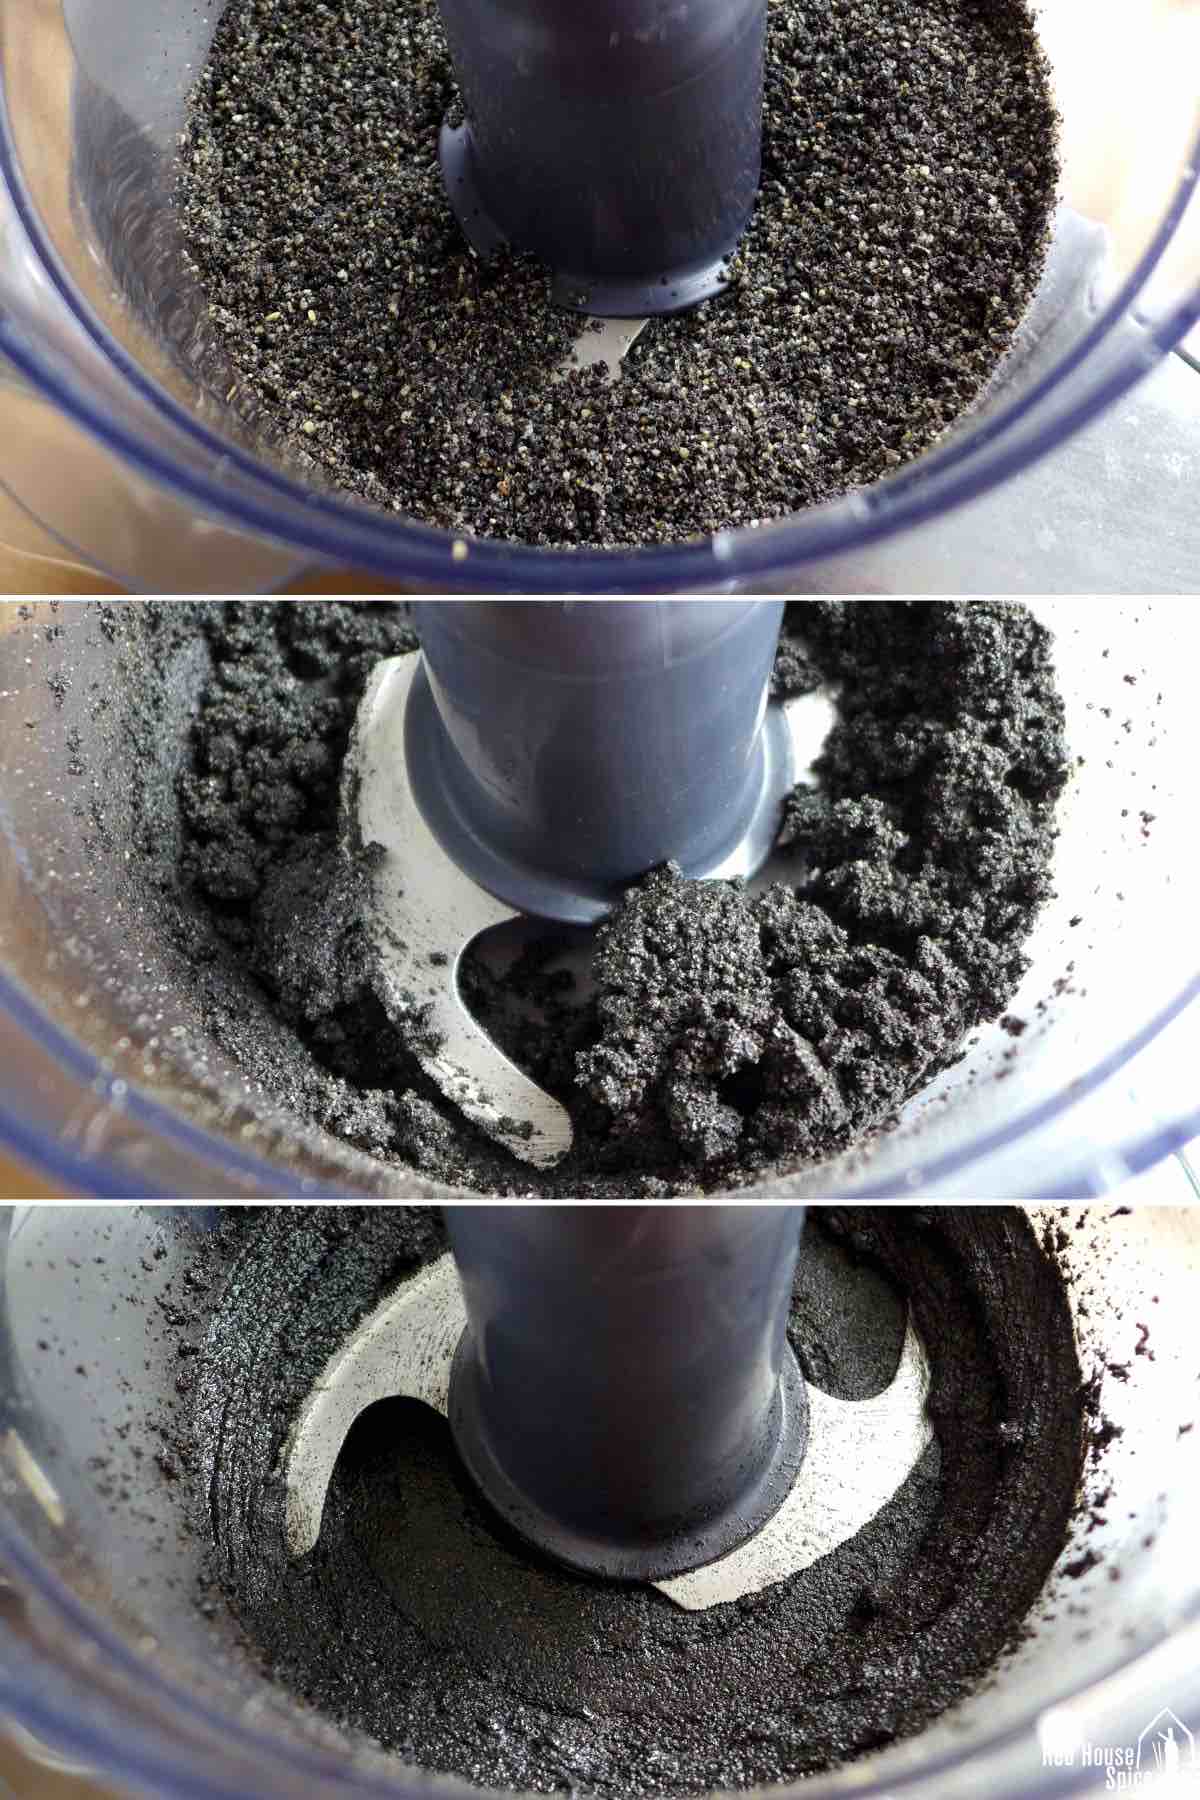 blending black sesame seeds in a food processor.